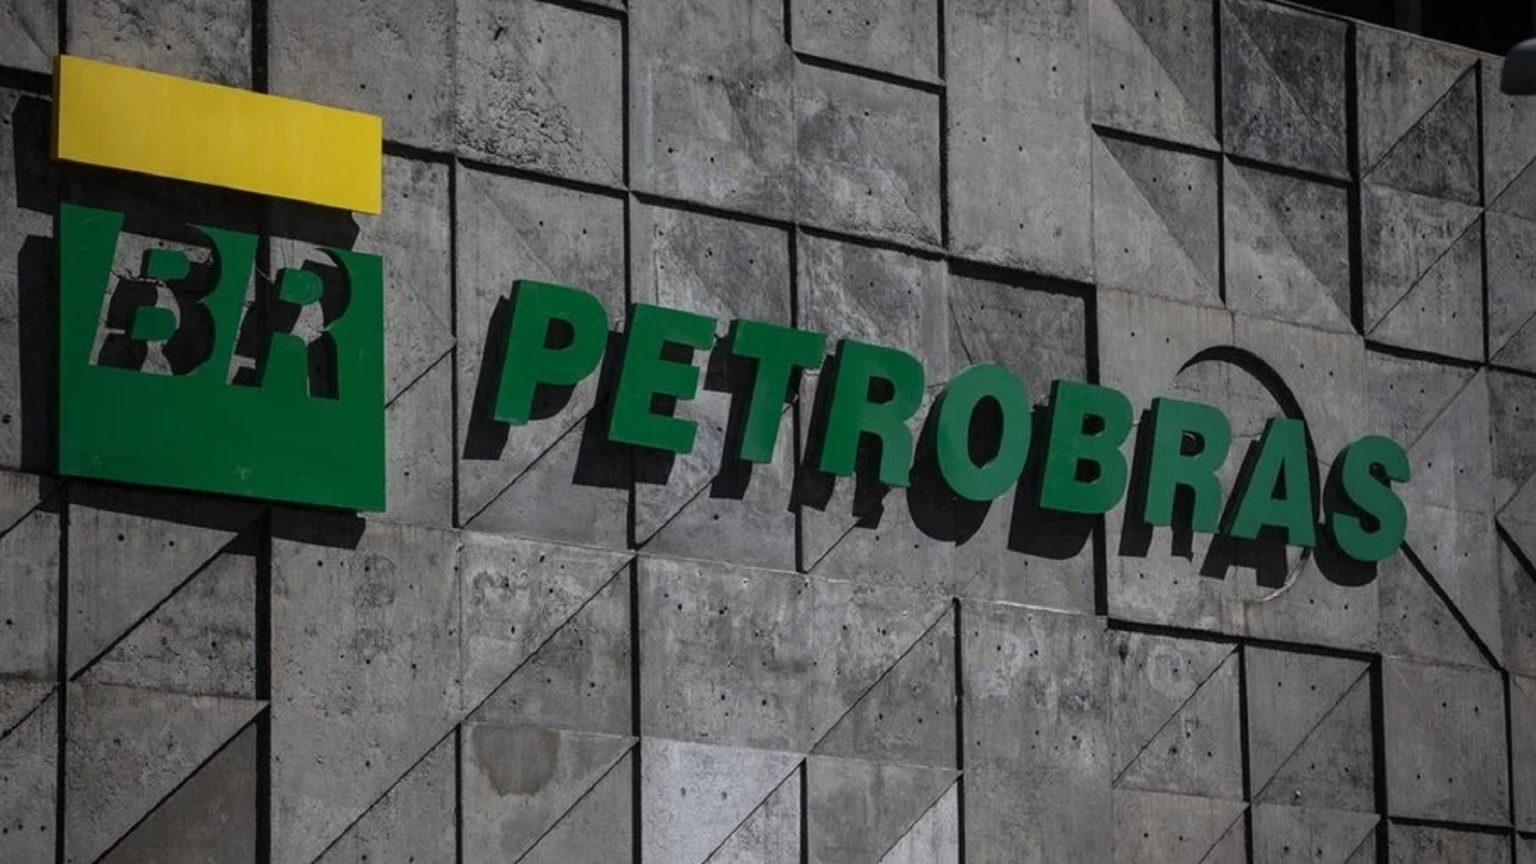 Dividendos Petrobras poderá pagar dividendos de R$1,80 ou mais no segundo trimestre uma das maiores empresas do Brasil e do setor petrolífero, está 